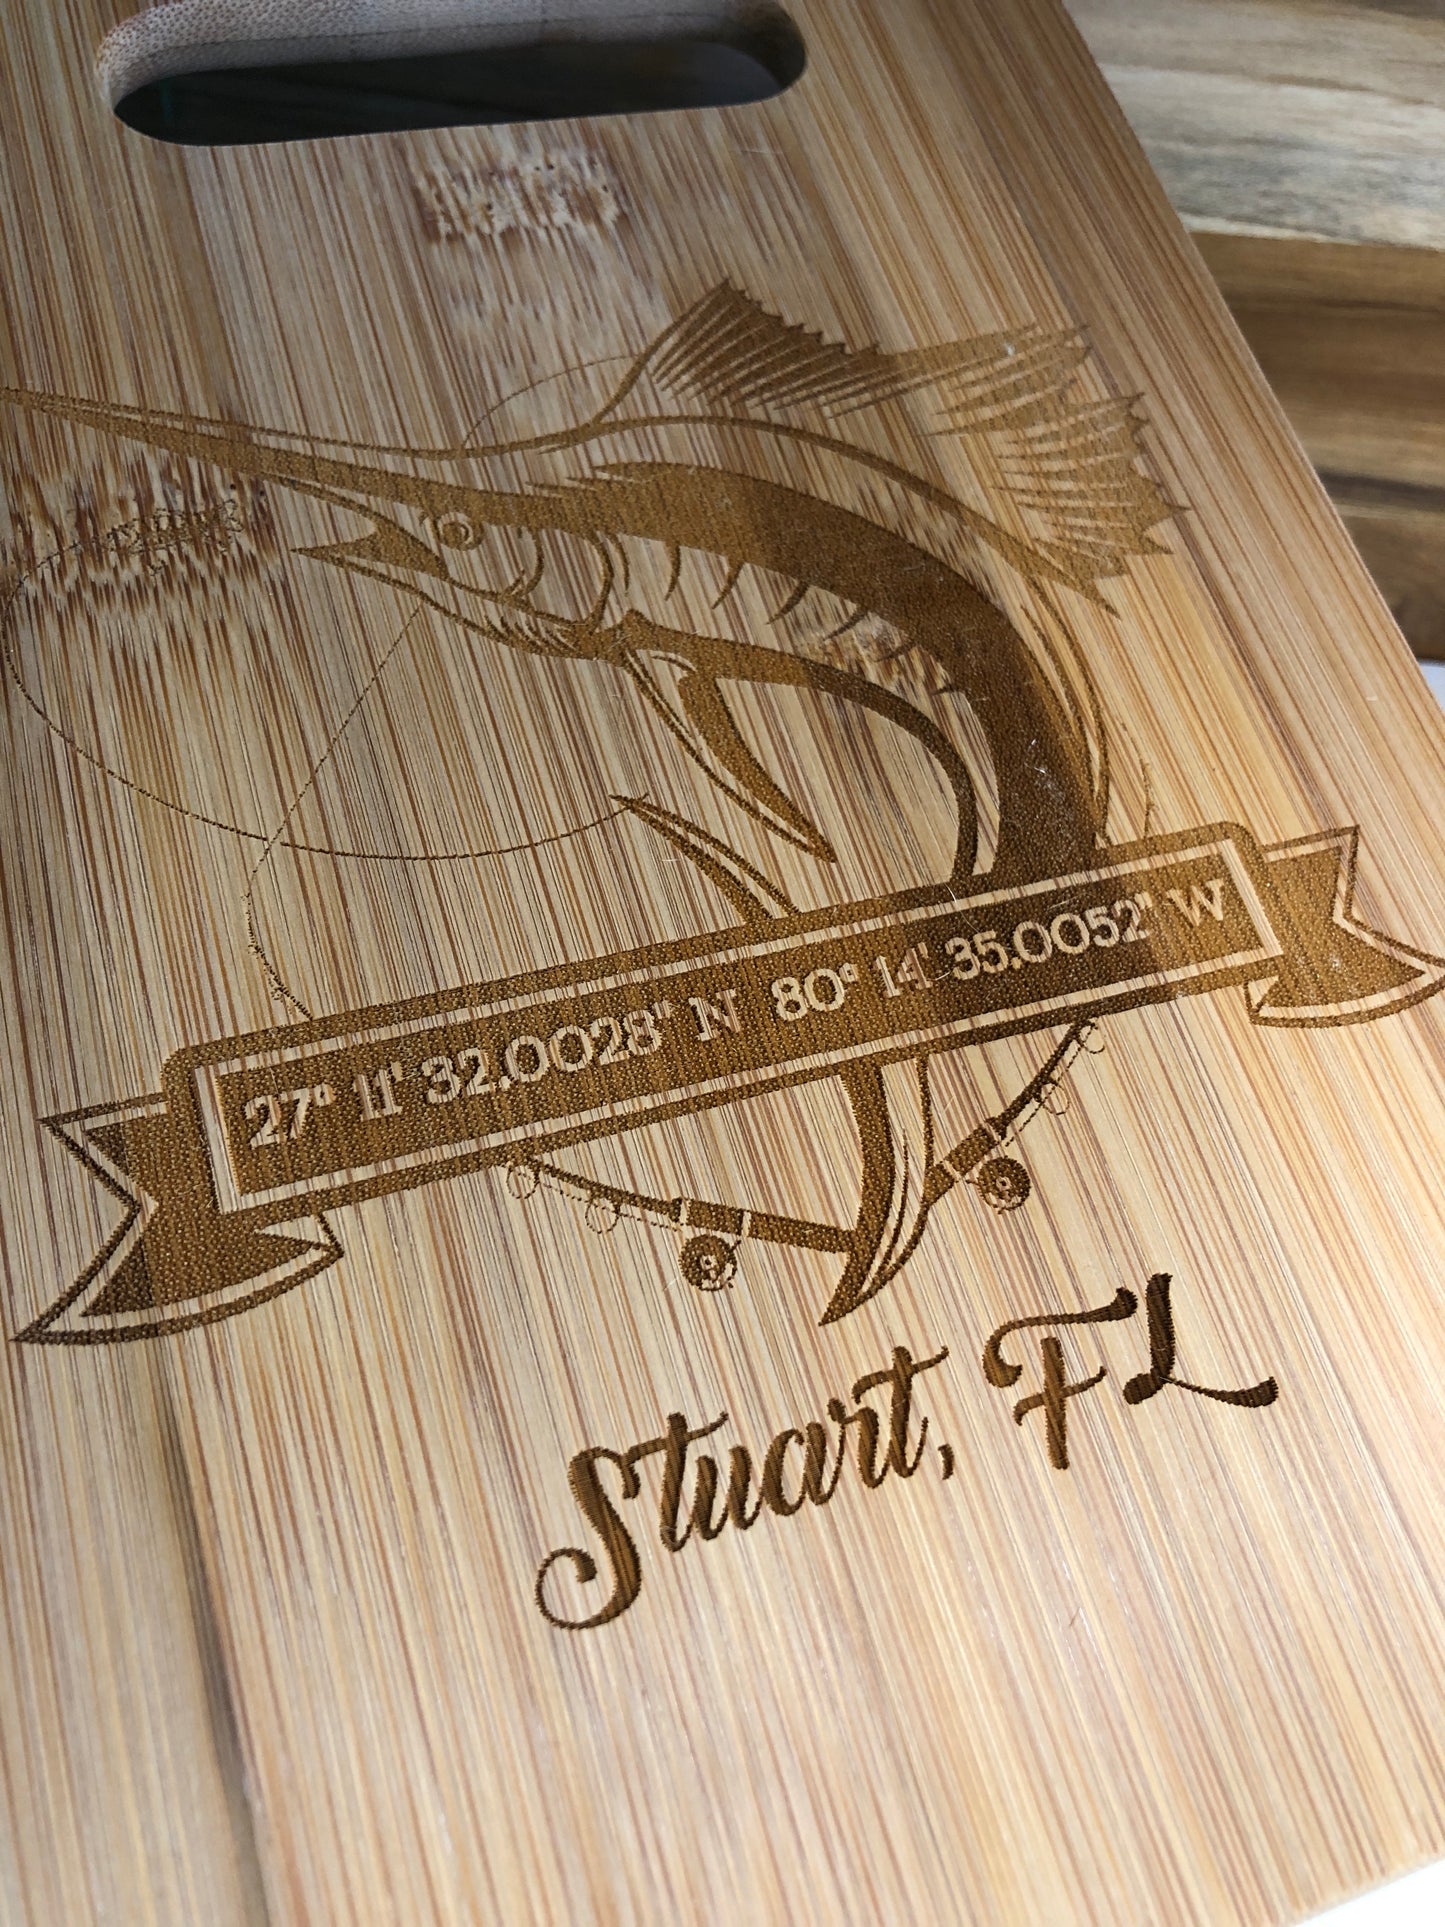 Stuart Bamboo Cutting Board